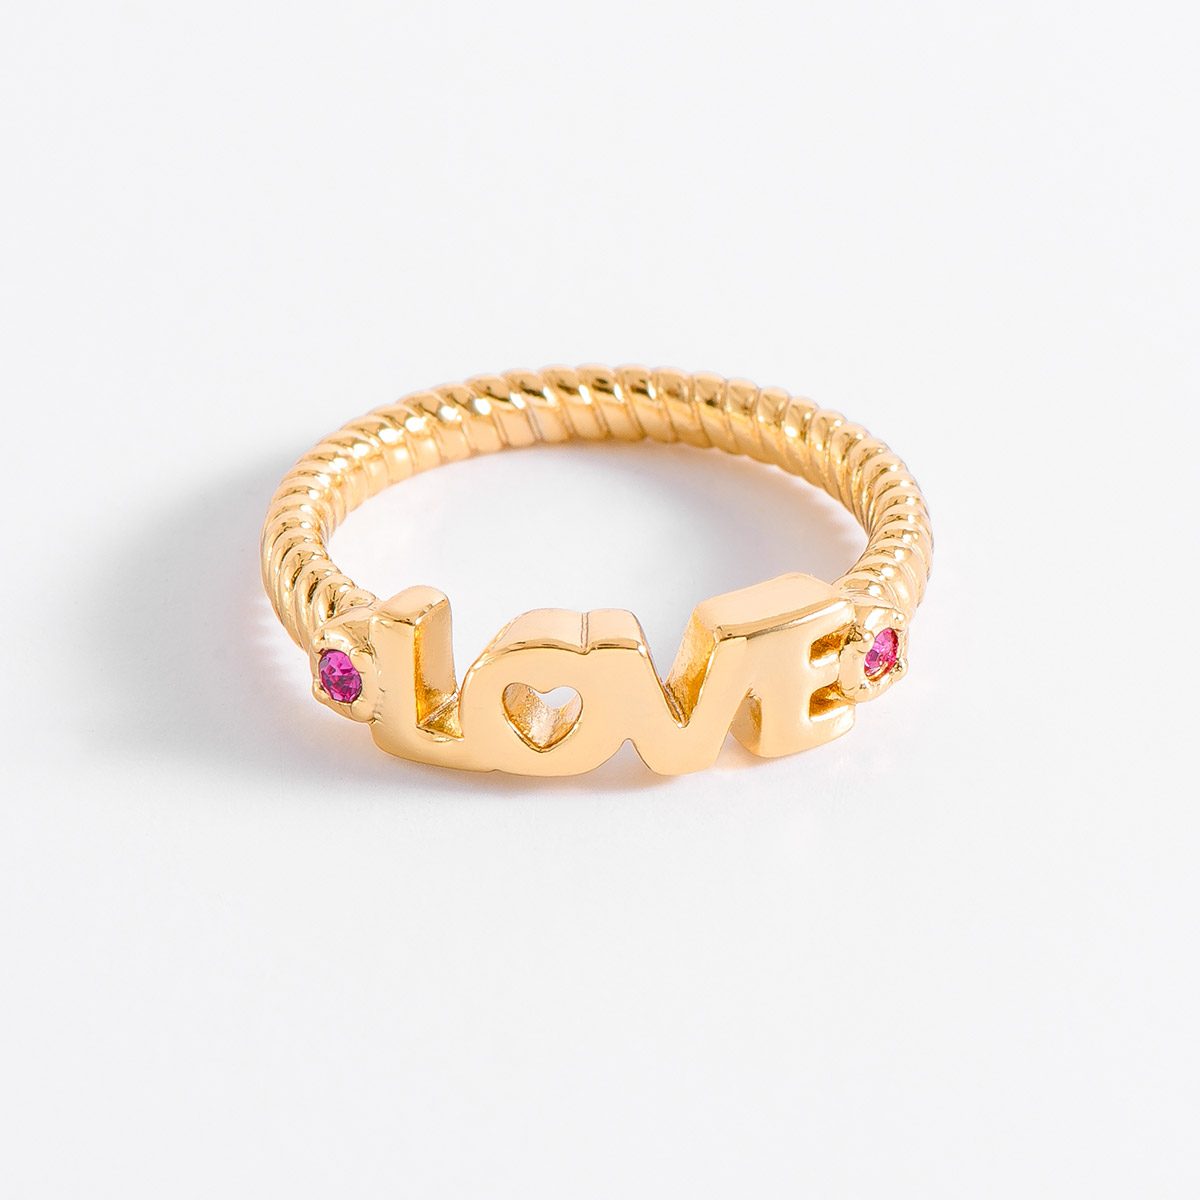 Coqueto anillo con la palabra “LOVE” en baño de oro, incrustado con dos piedras en tono fucsia. Combina tu set de collar y pulsera
-        Anillo
-        Medidas del 6 al 9 
-        Baño de Oro 18k
-        Piedras en tono fucsia
